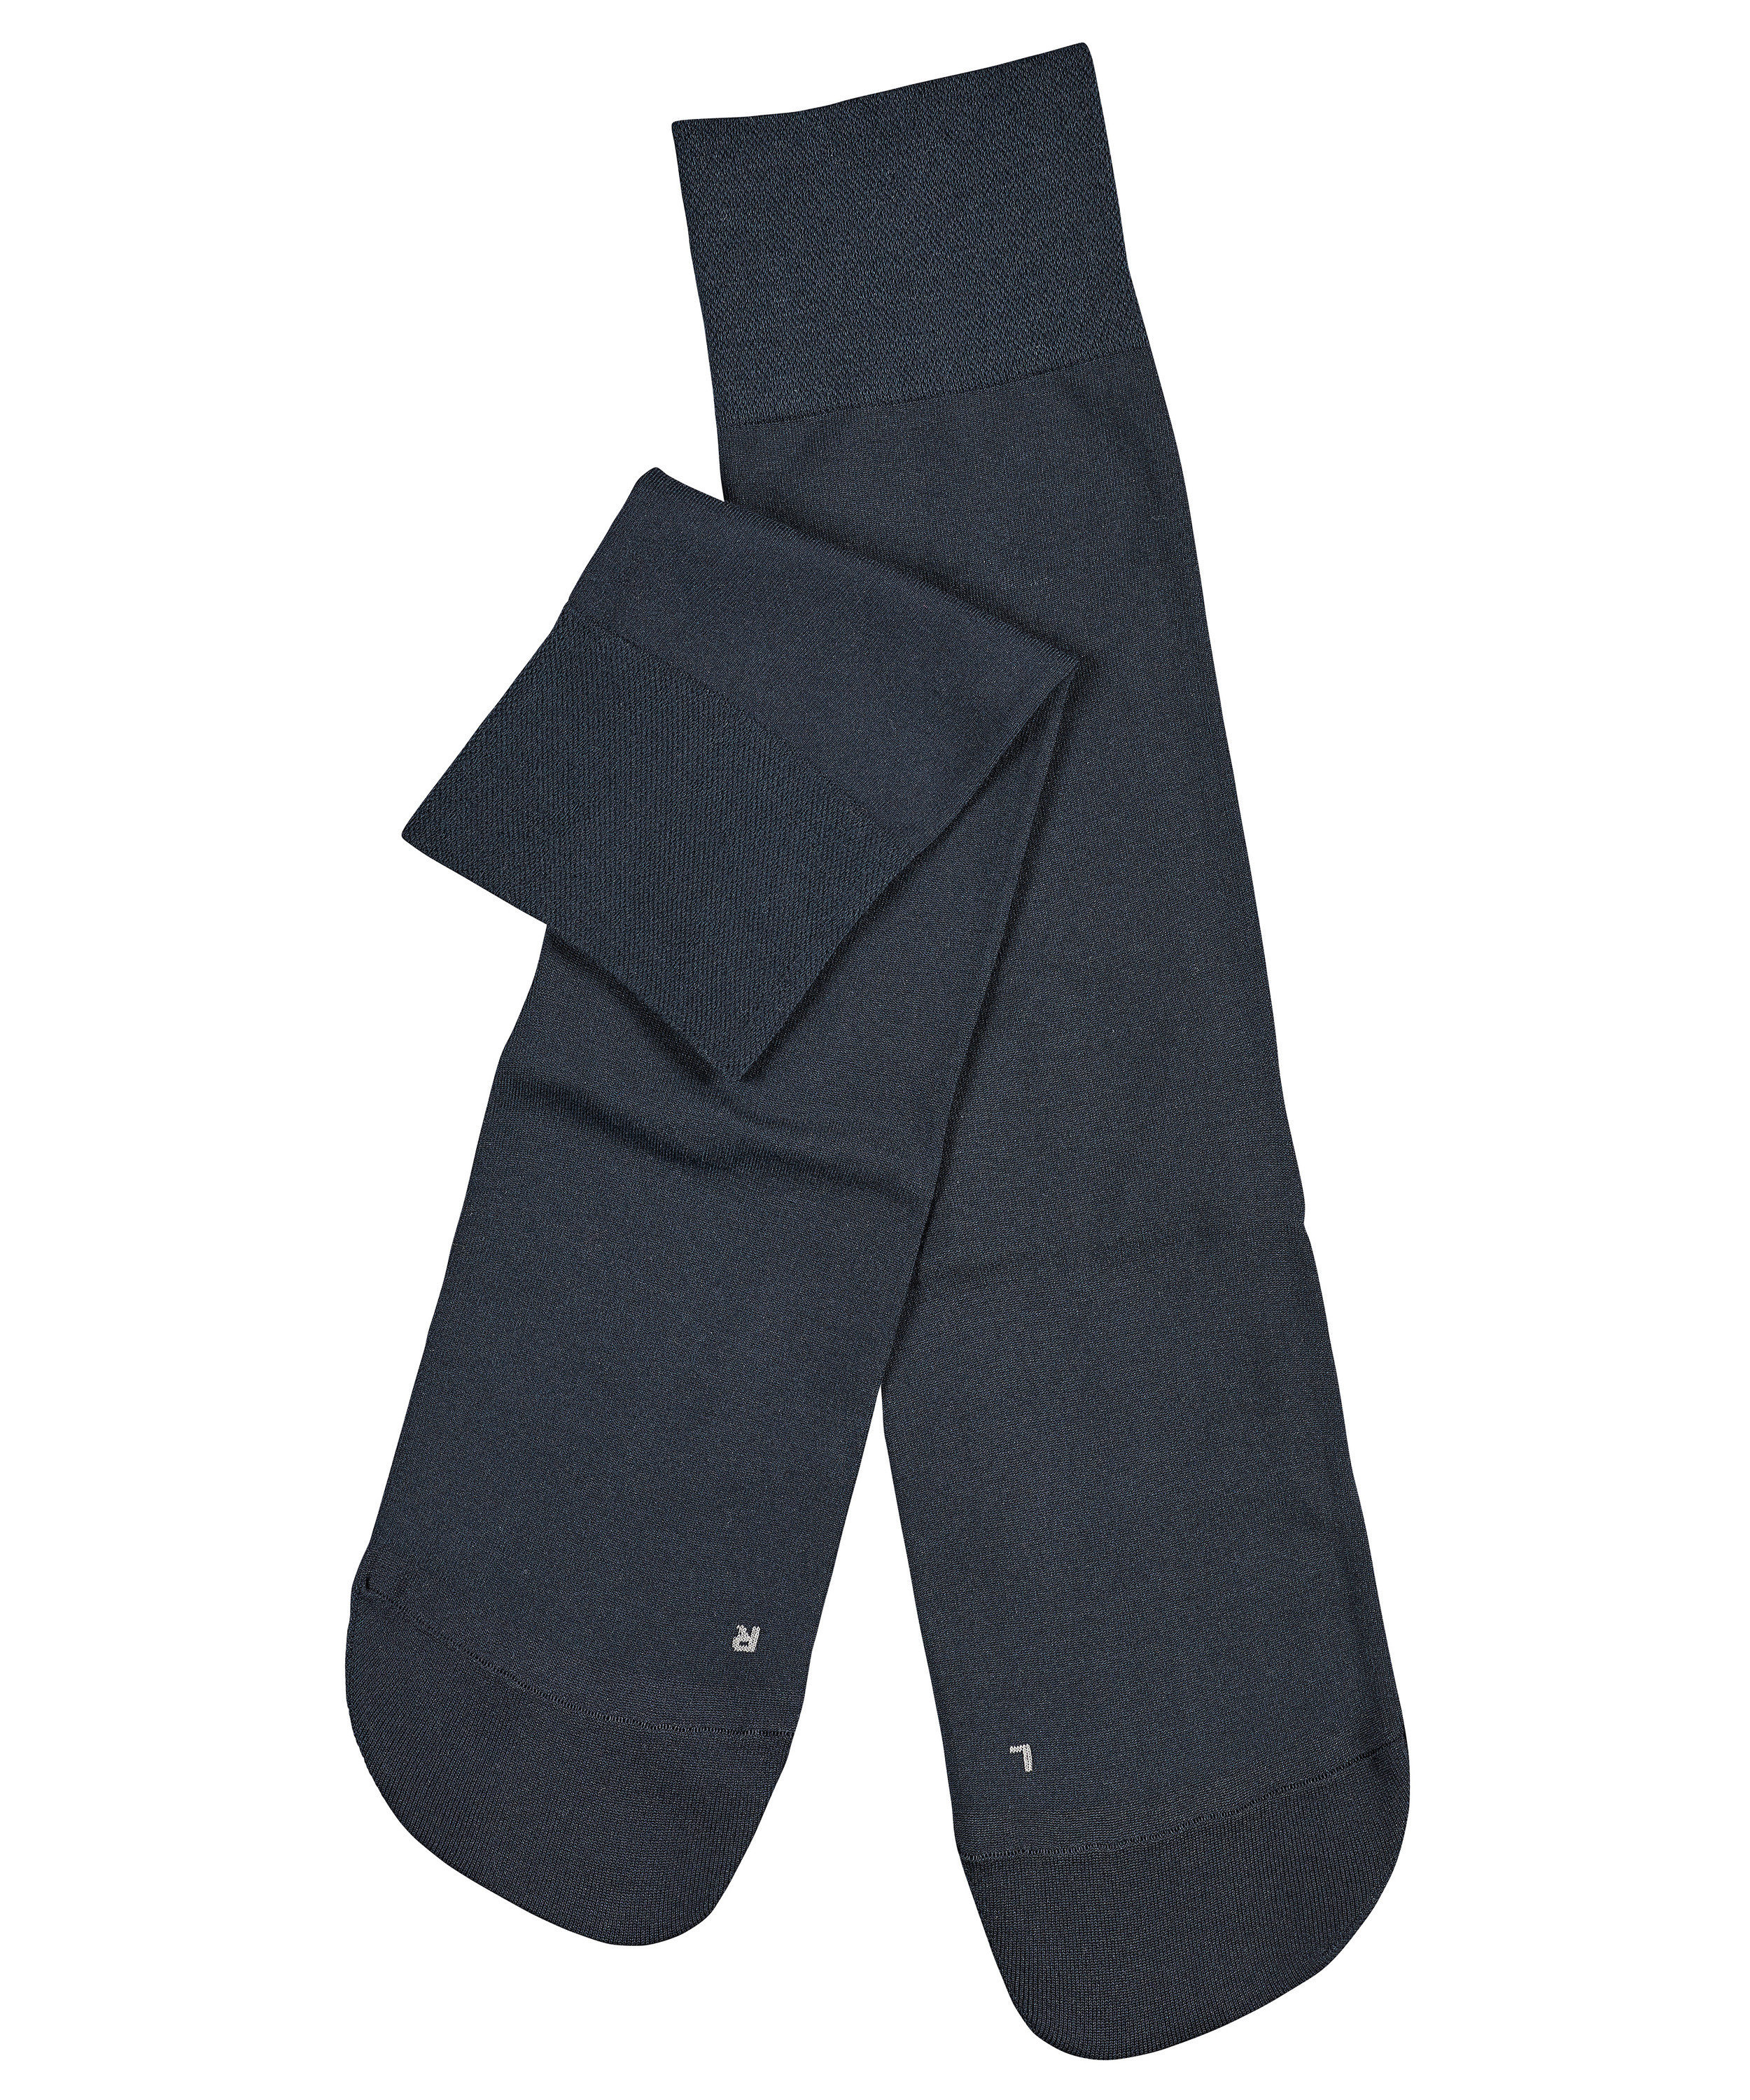 leichte Baumwoll-Socke "Sensitive Granada" ohne Gummi-Druck